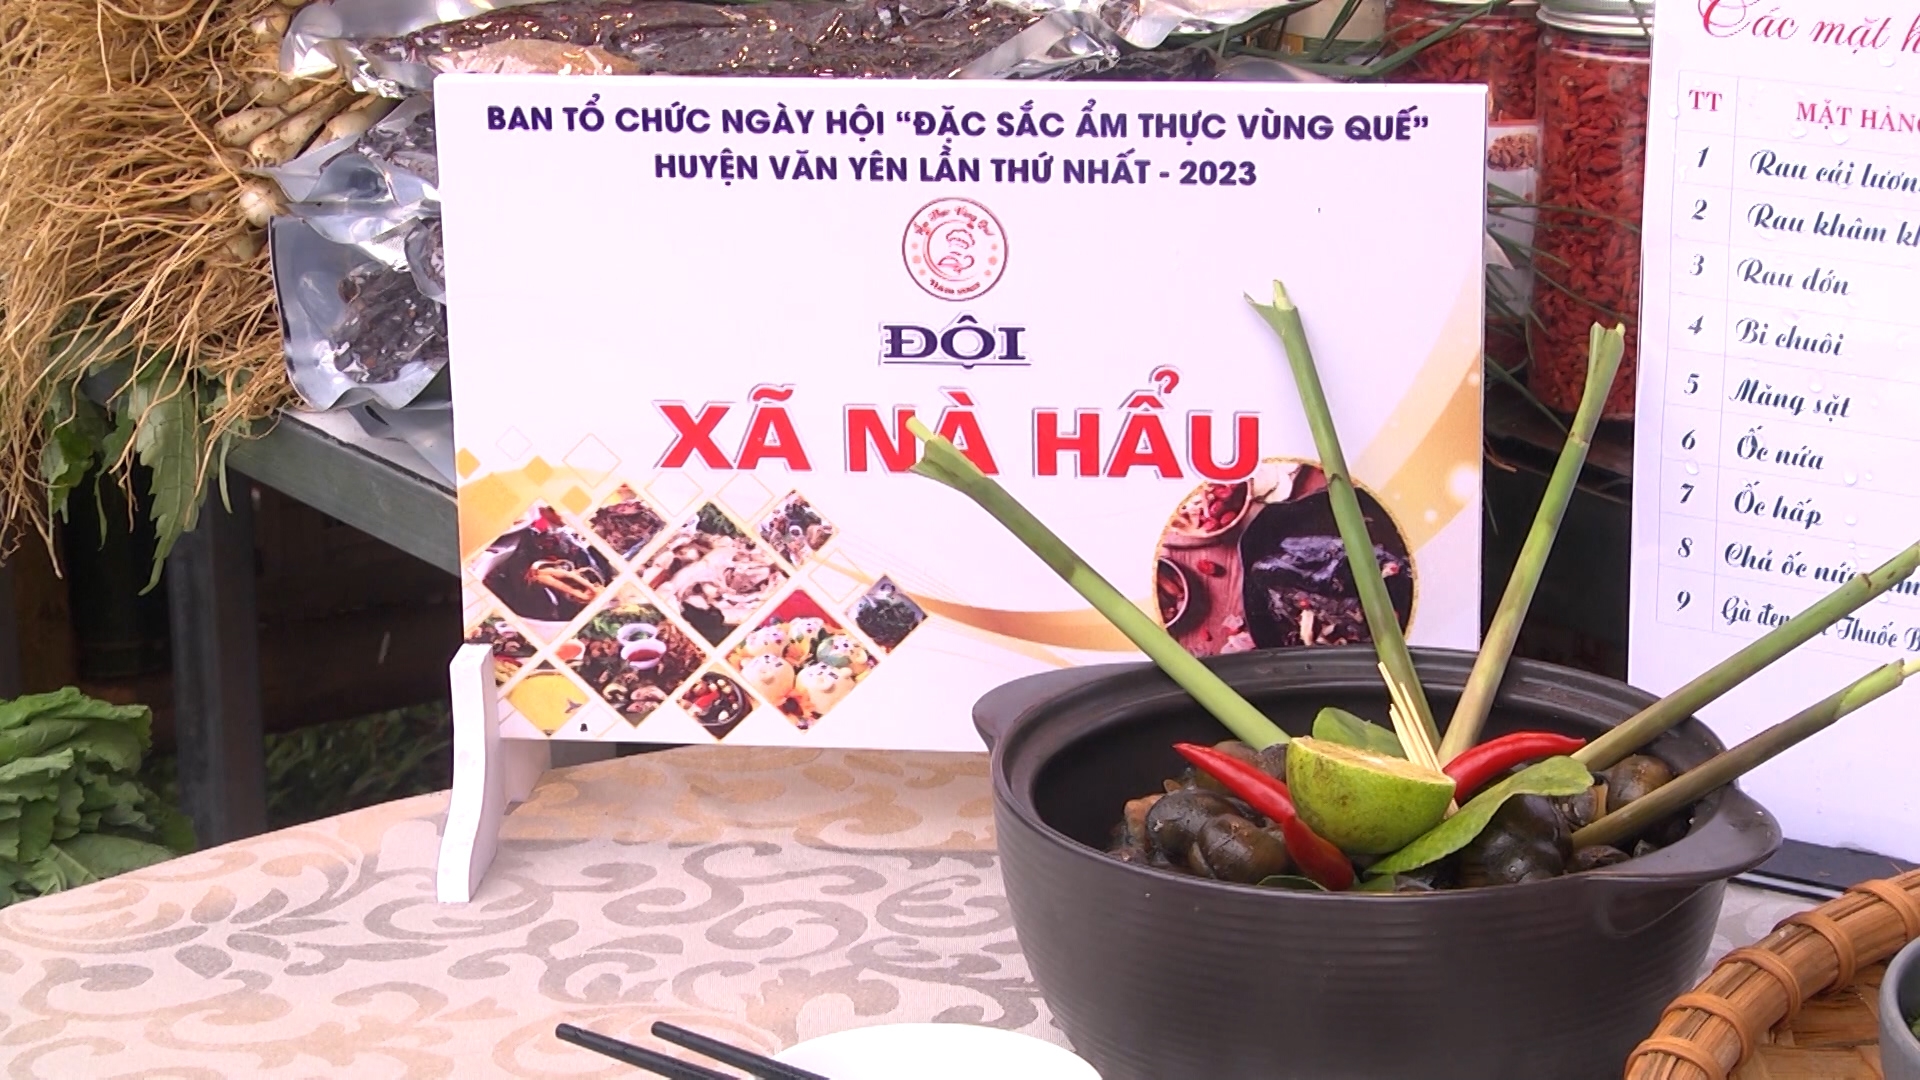 Đặc sắc Ngày hội ẩm thực huyện Văn Yên lần thứ nhất năm 2023